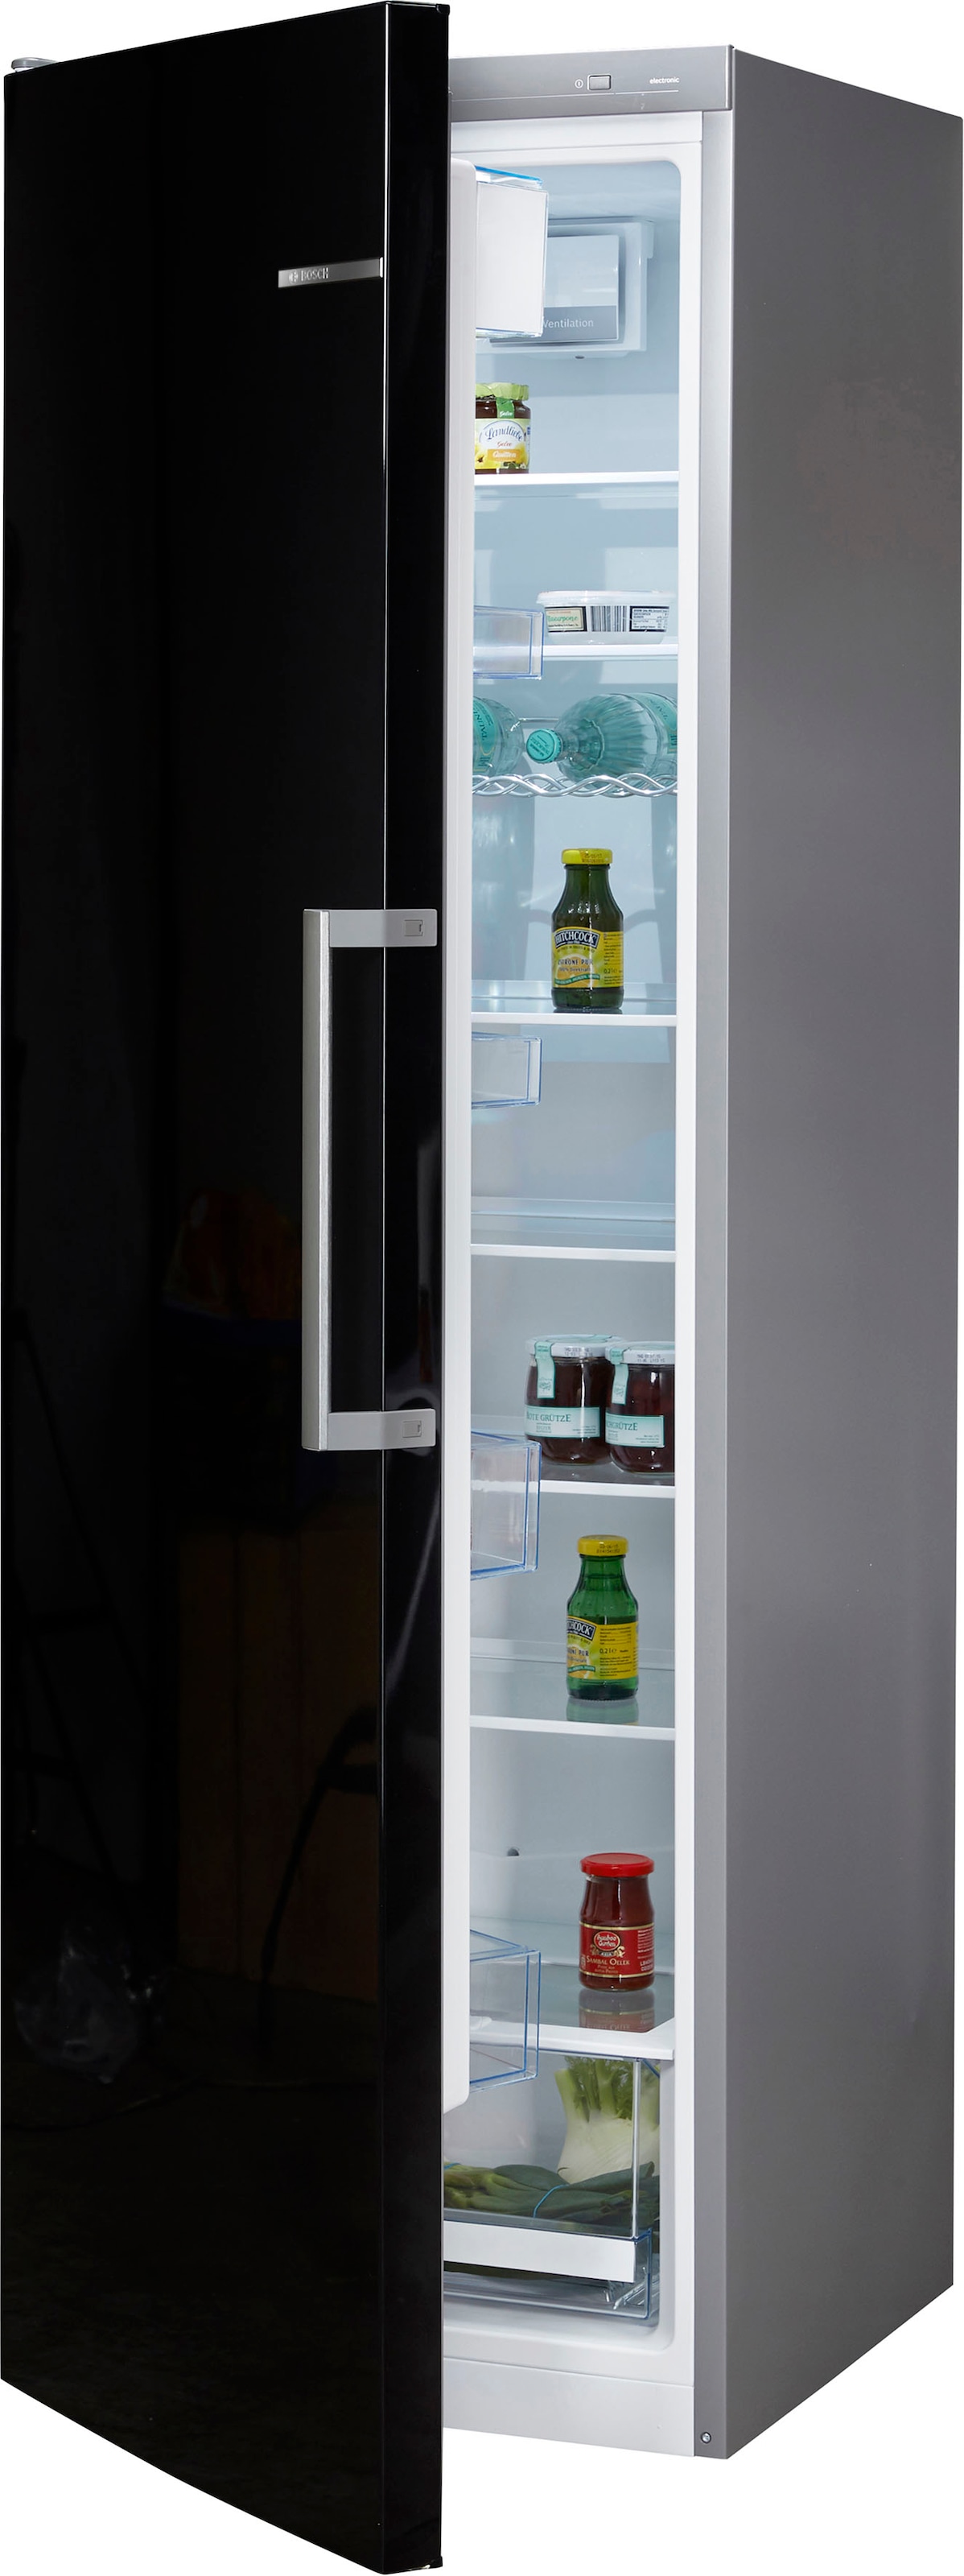 BOSCH Kühlschrank »KSV36VBEP«, KSV36VBEP, 186 cm hoch, 60 cm breit auf  Raten kaufen